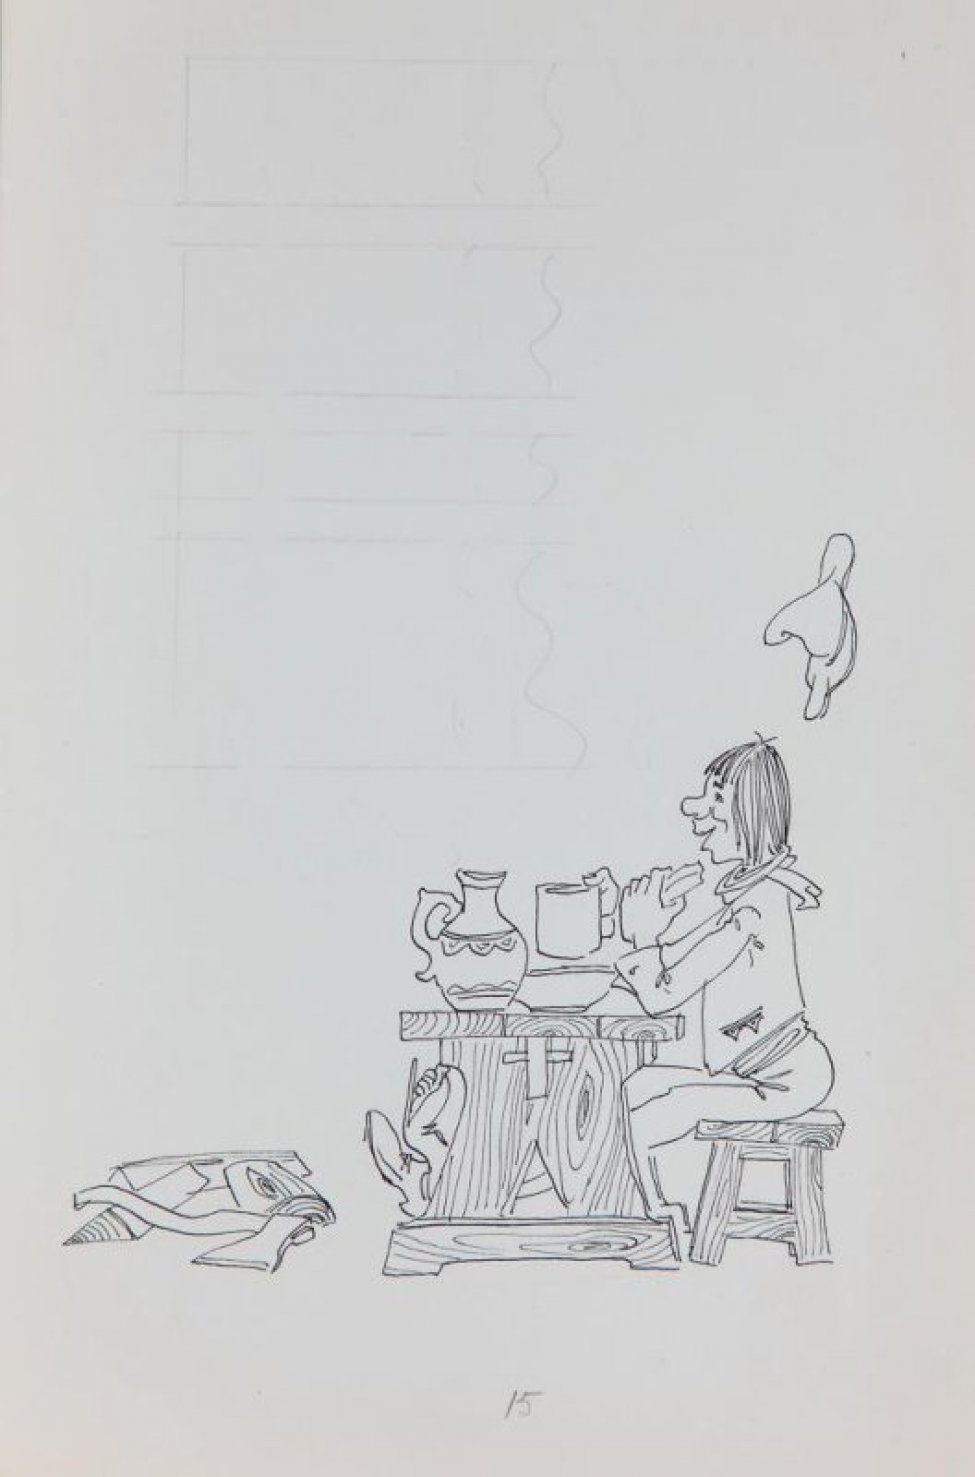 В нижней части листа - стилизованное изображение молодого человека, сидящего за столом, с кружкой и куском хлеба в руках. Над ним справа - висящая на стене шляпа. Слева - поленья и топор. В верхней части - разметка графитным карандашом для текста.